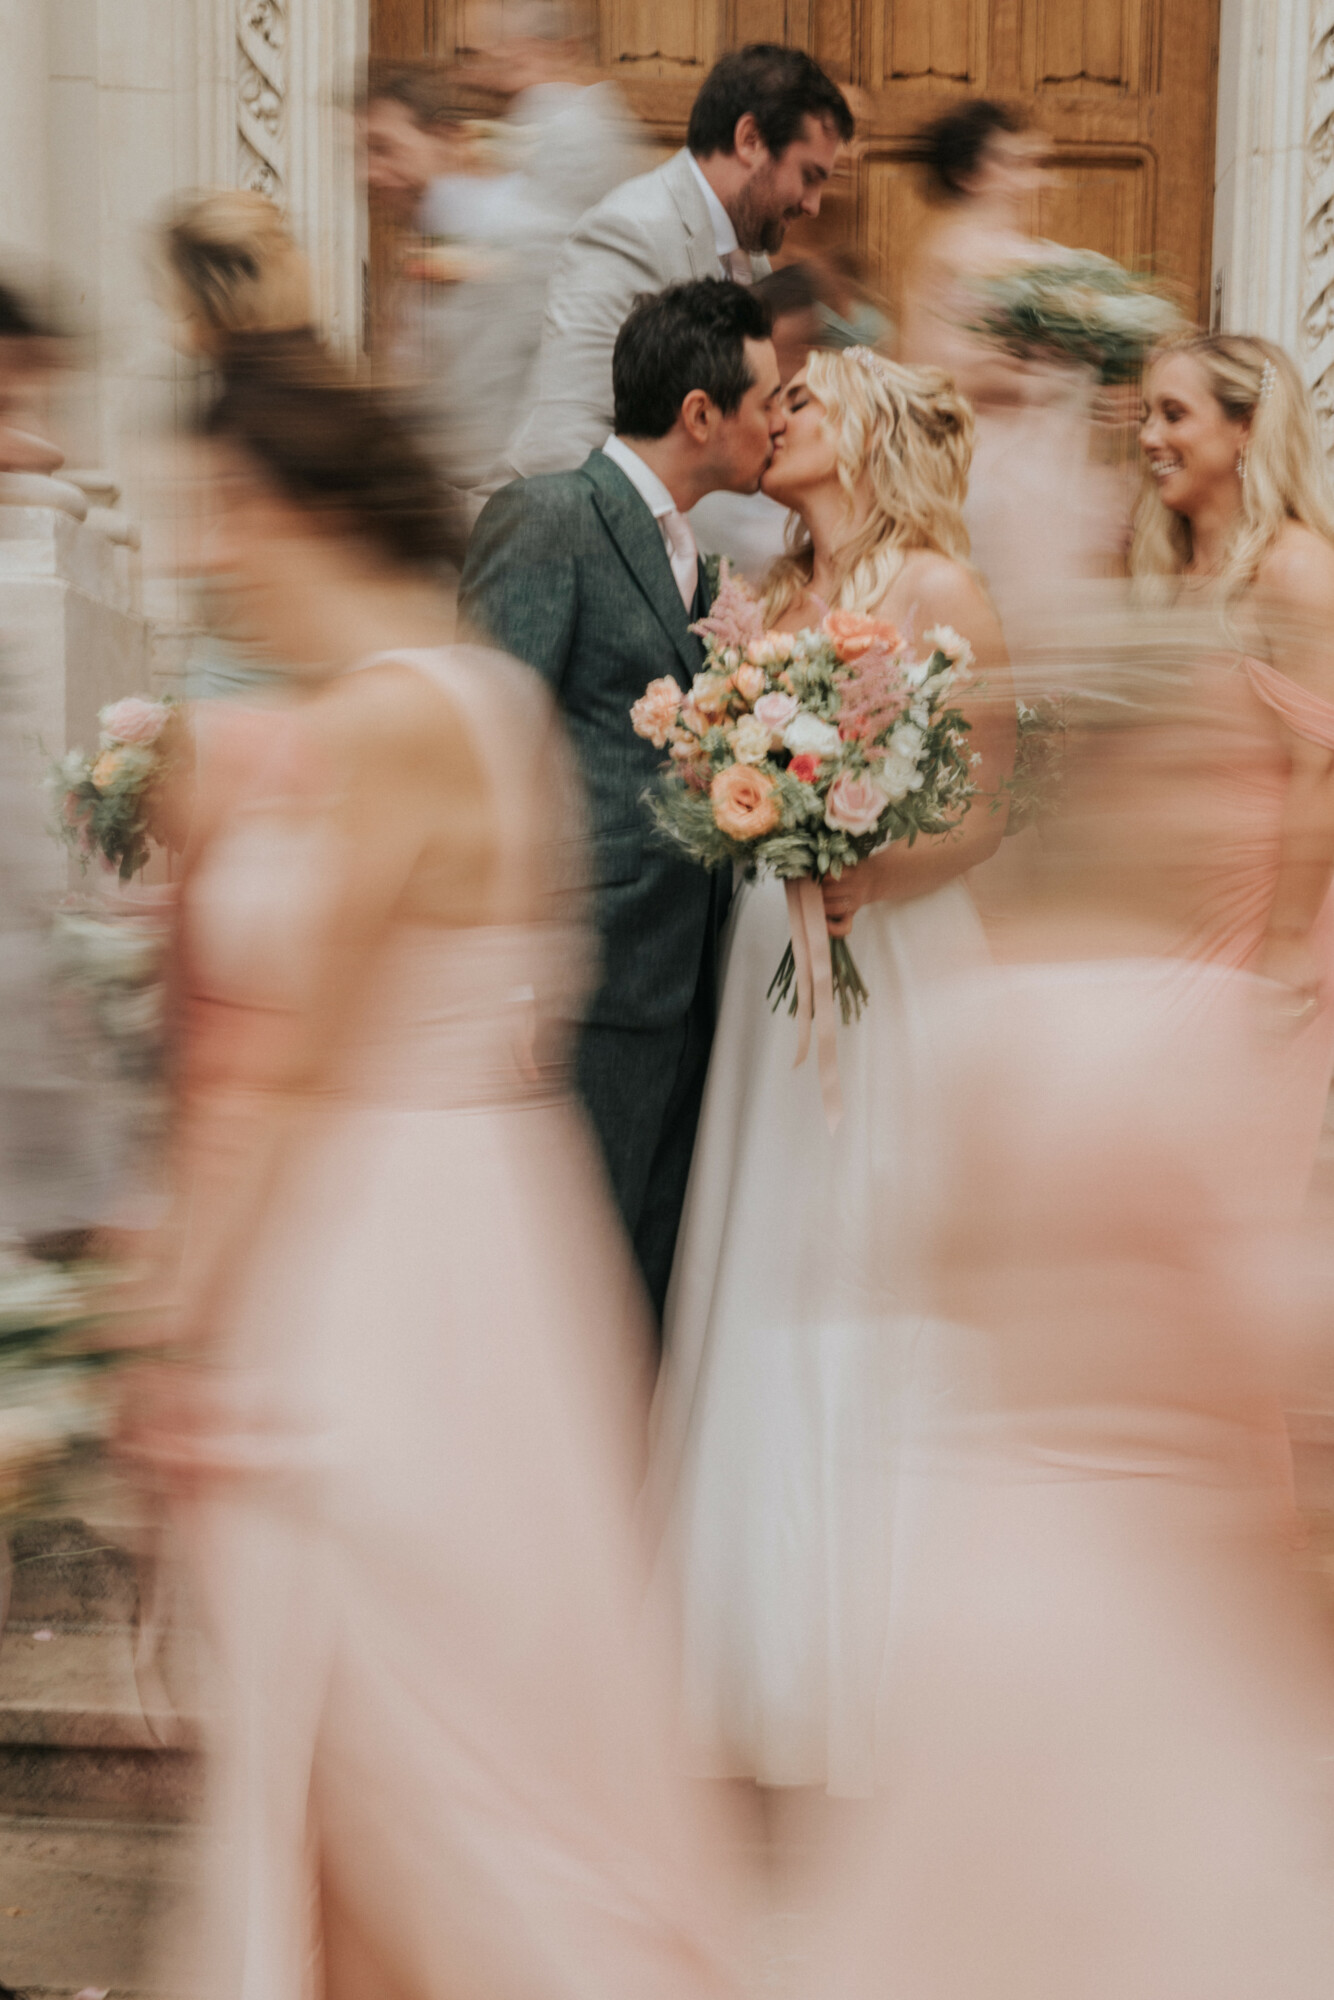 mariage au château, mariage en France, bride and groom, bouquet de marié, art floral, floral designer paris, Weddings designer Paris